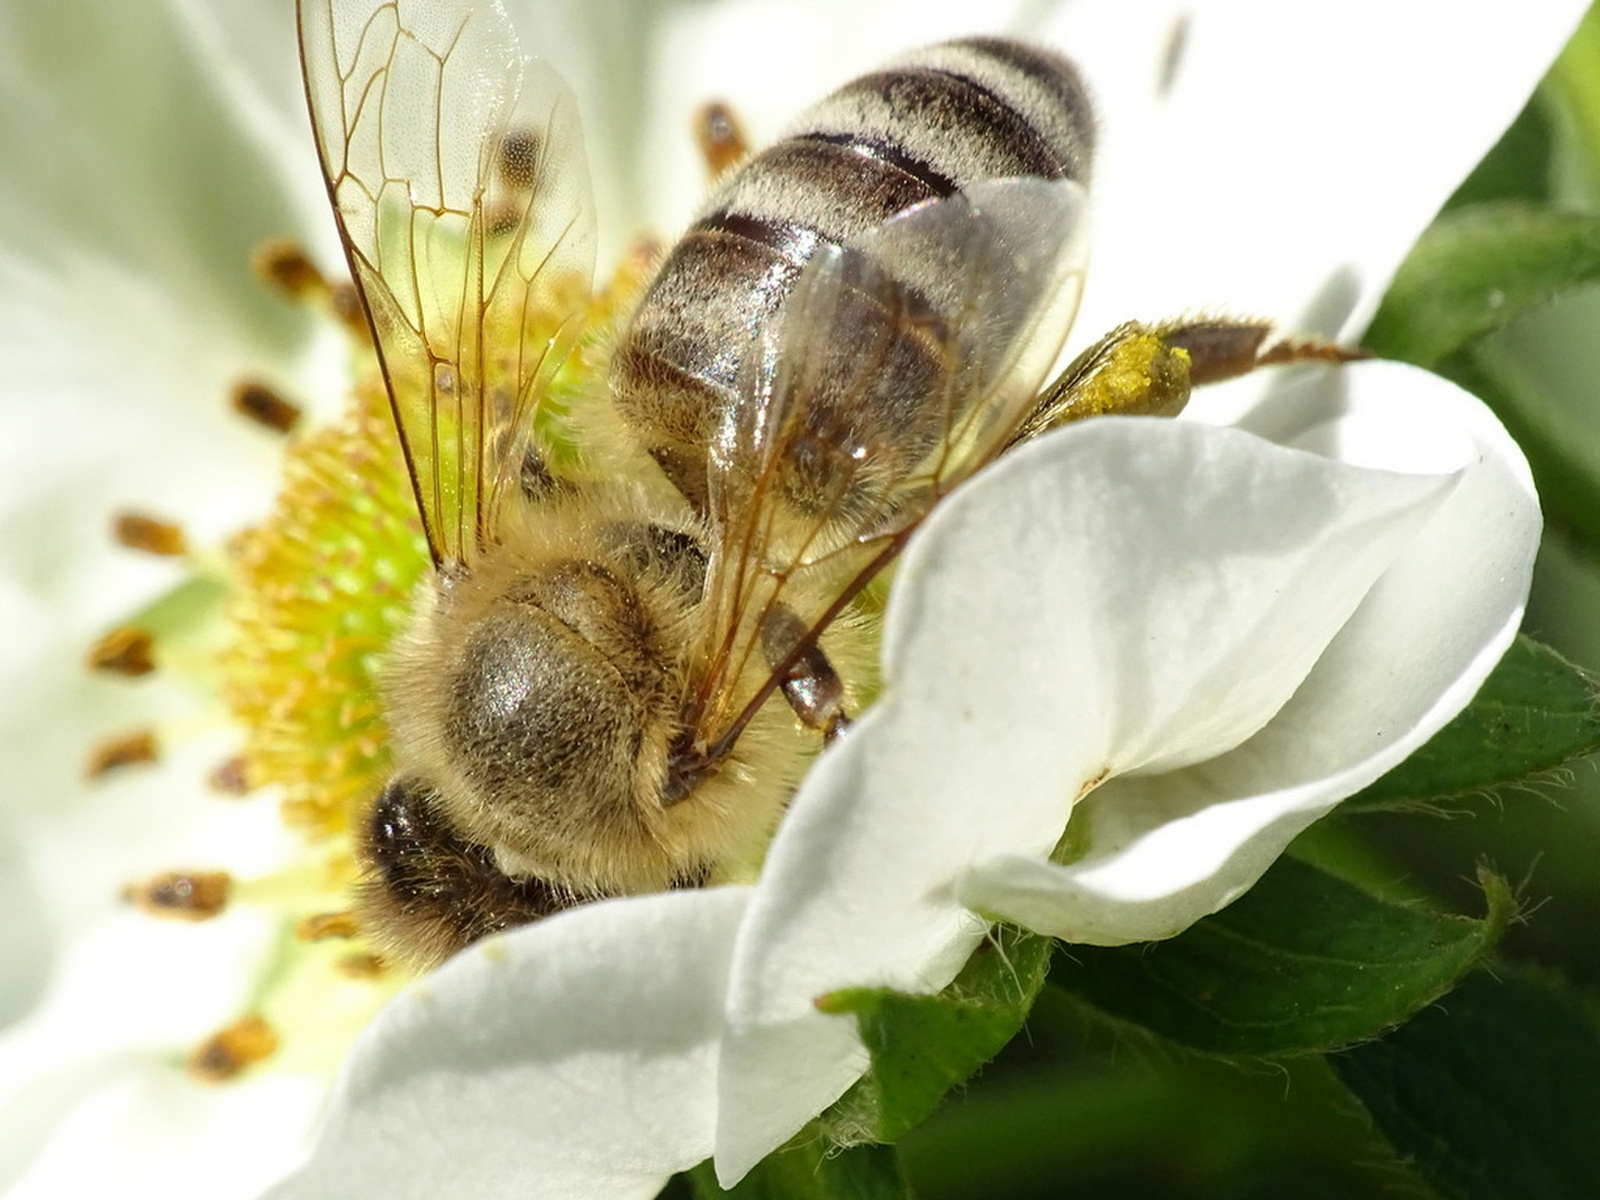 Méhek világnapja